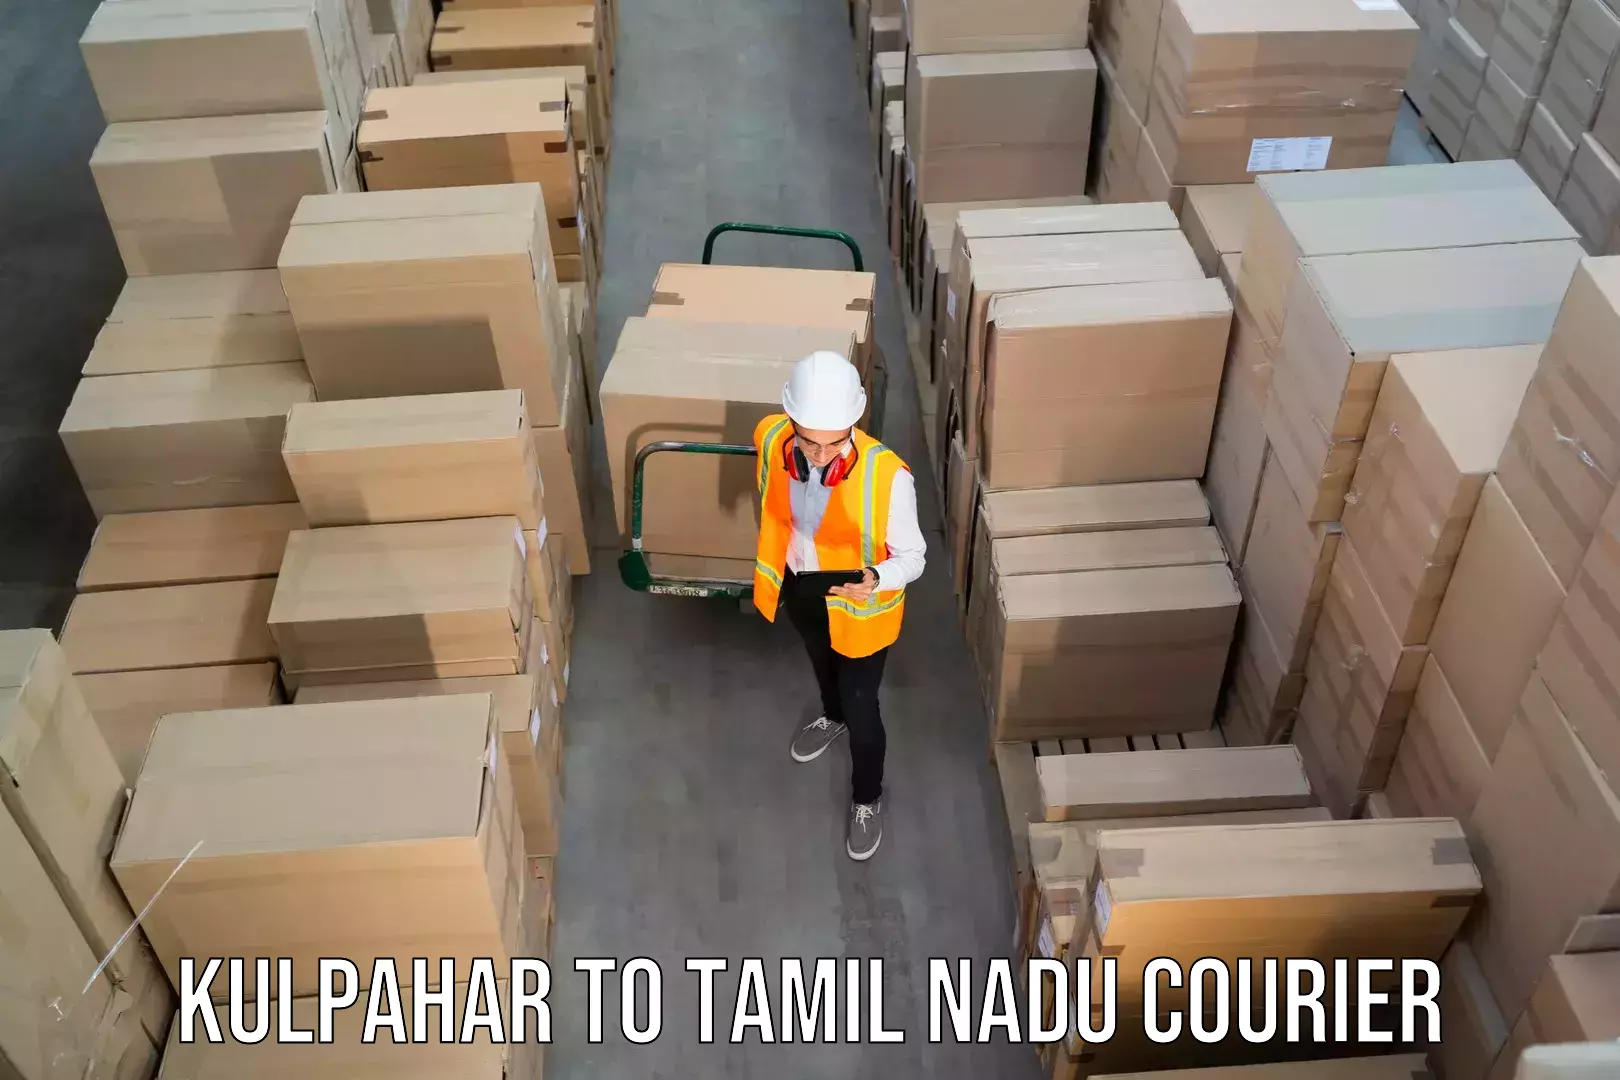 Premium courier services Kulpahar to Tiruchirappalli